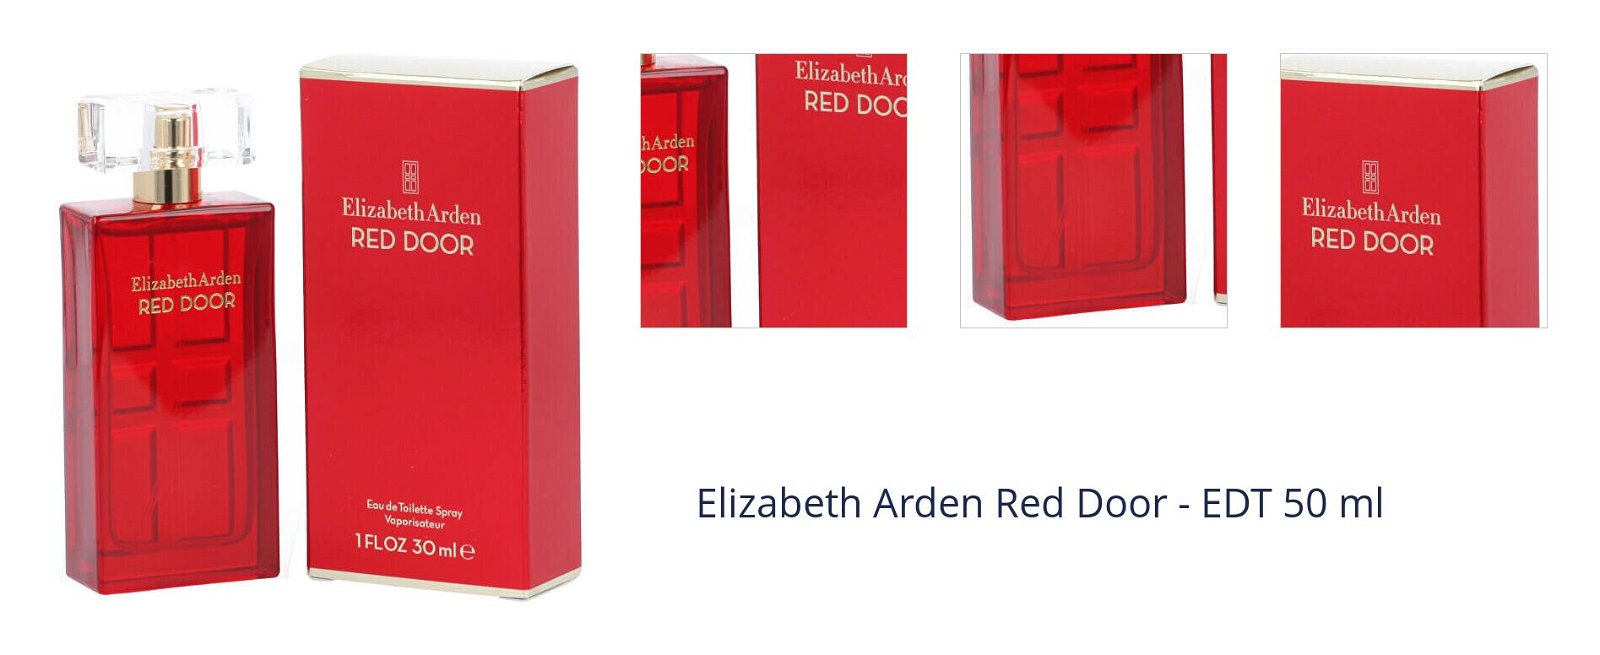 Elizabeth Arden Red Door - EDT 50 ml 1